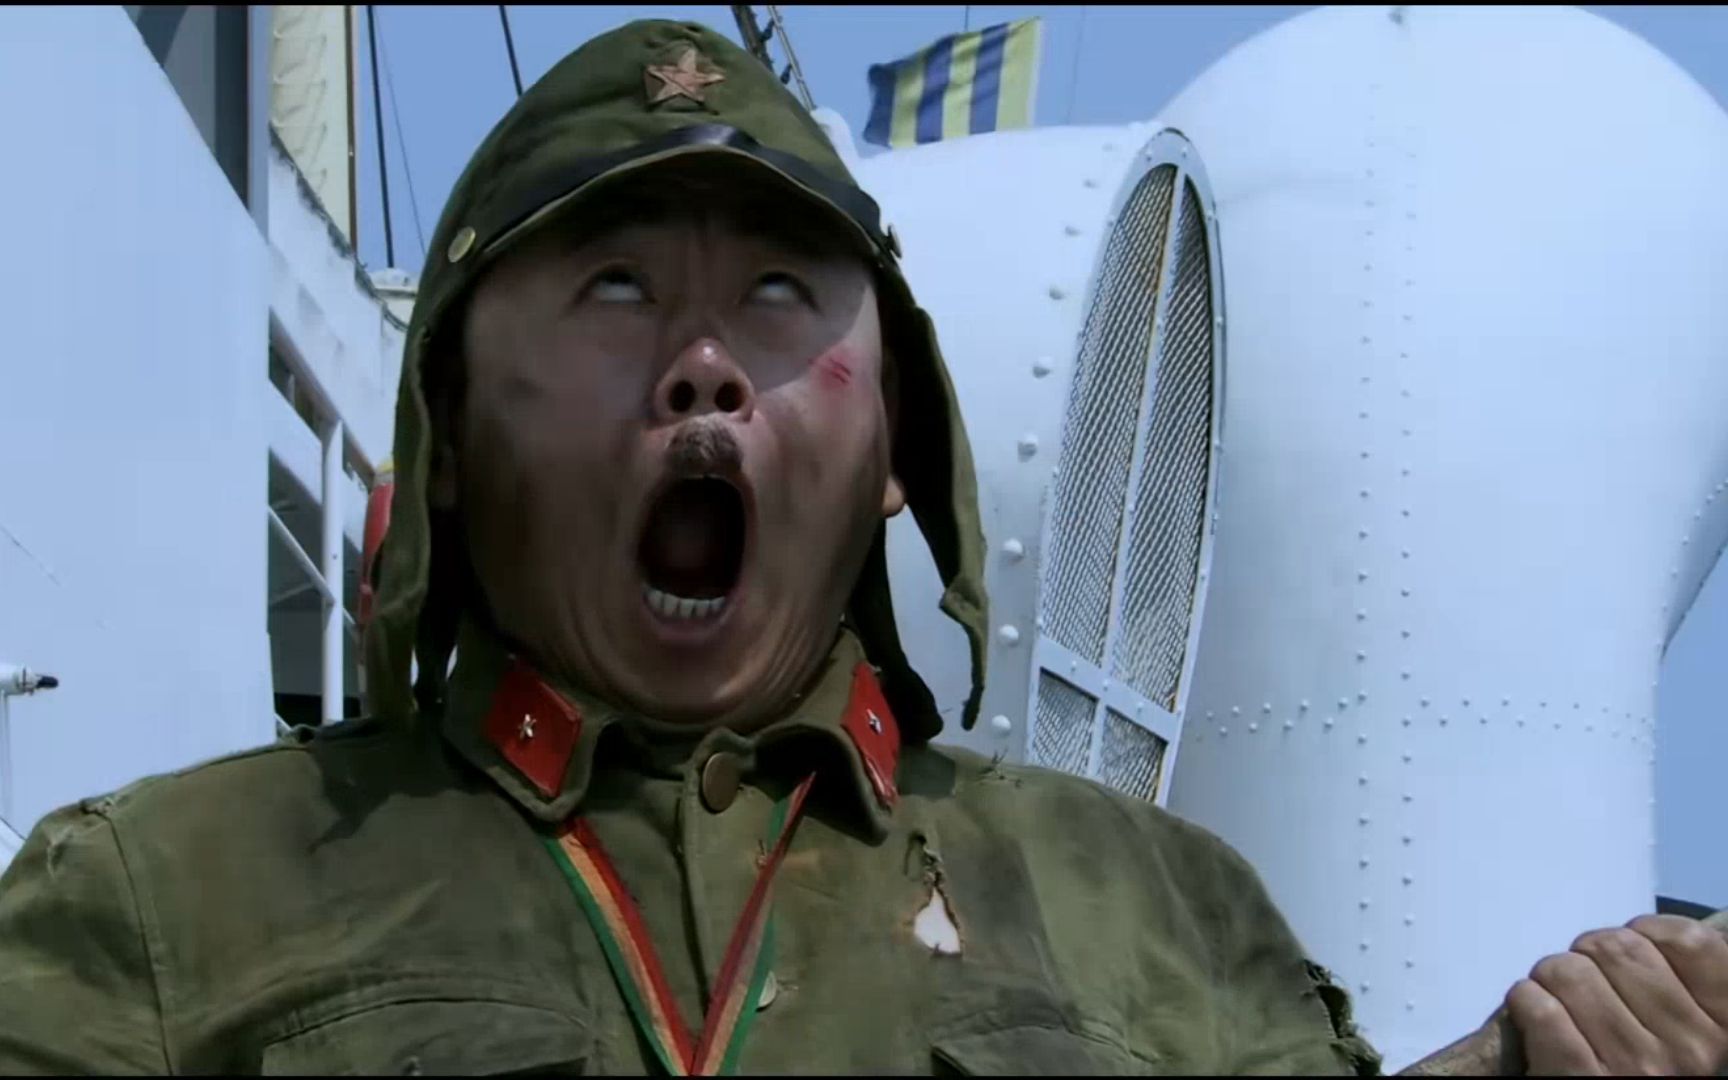 抗战喜剧:潘长江从天而降,竟然砸断鬼子大佐的双腿,太逗了!